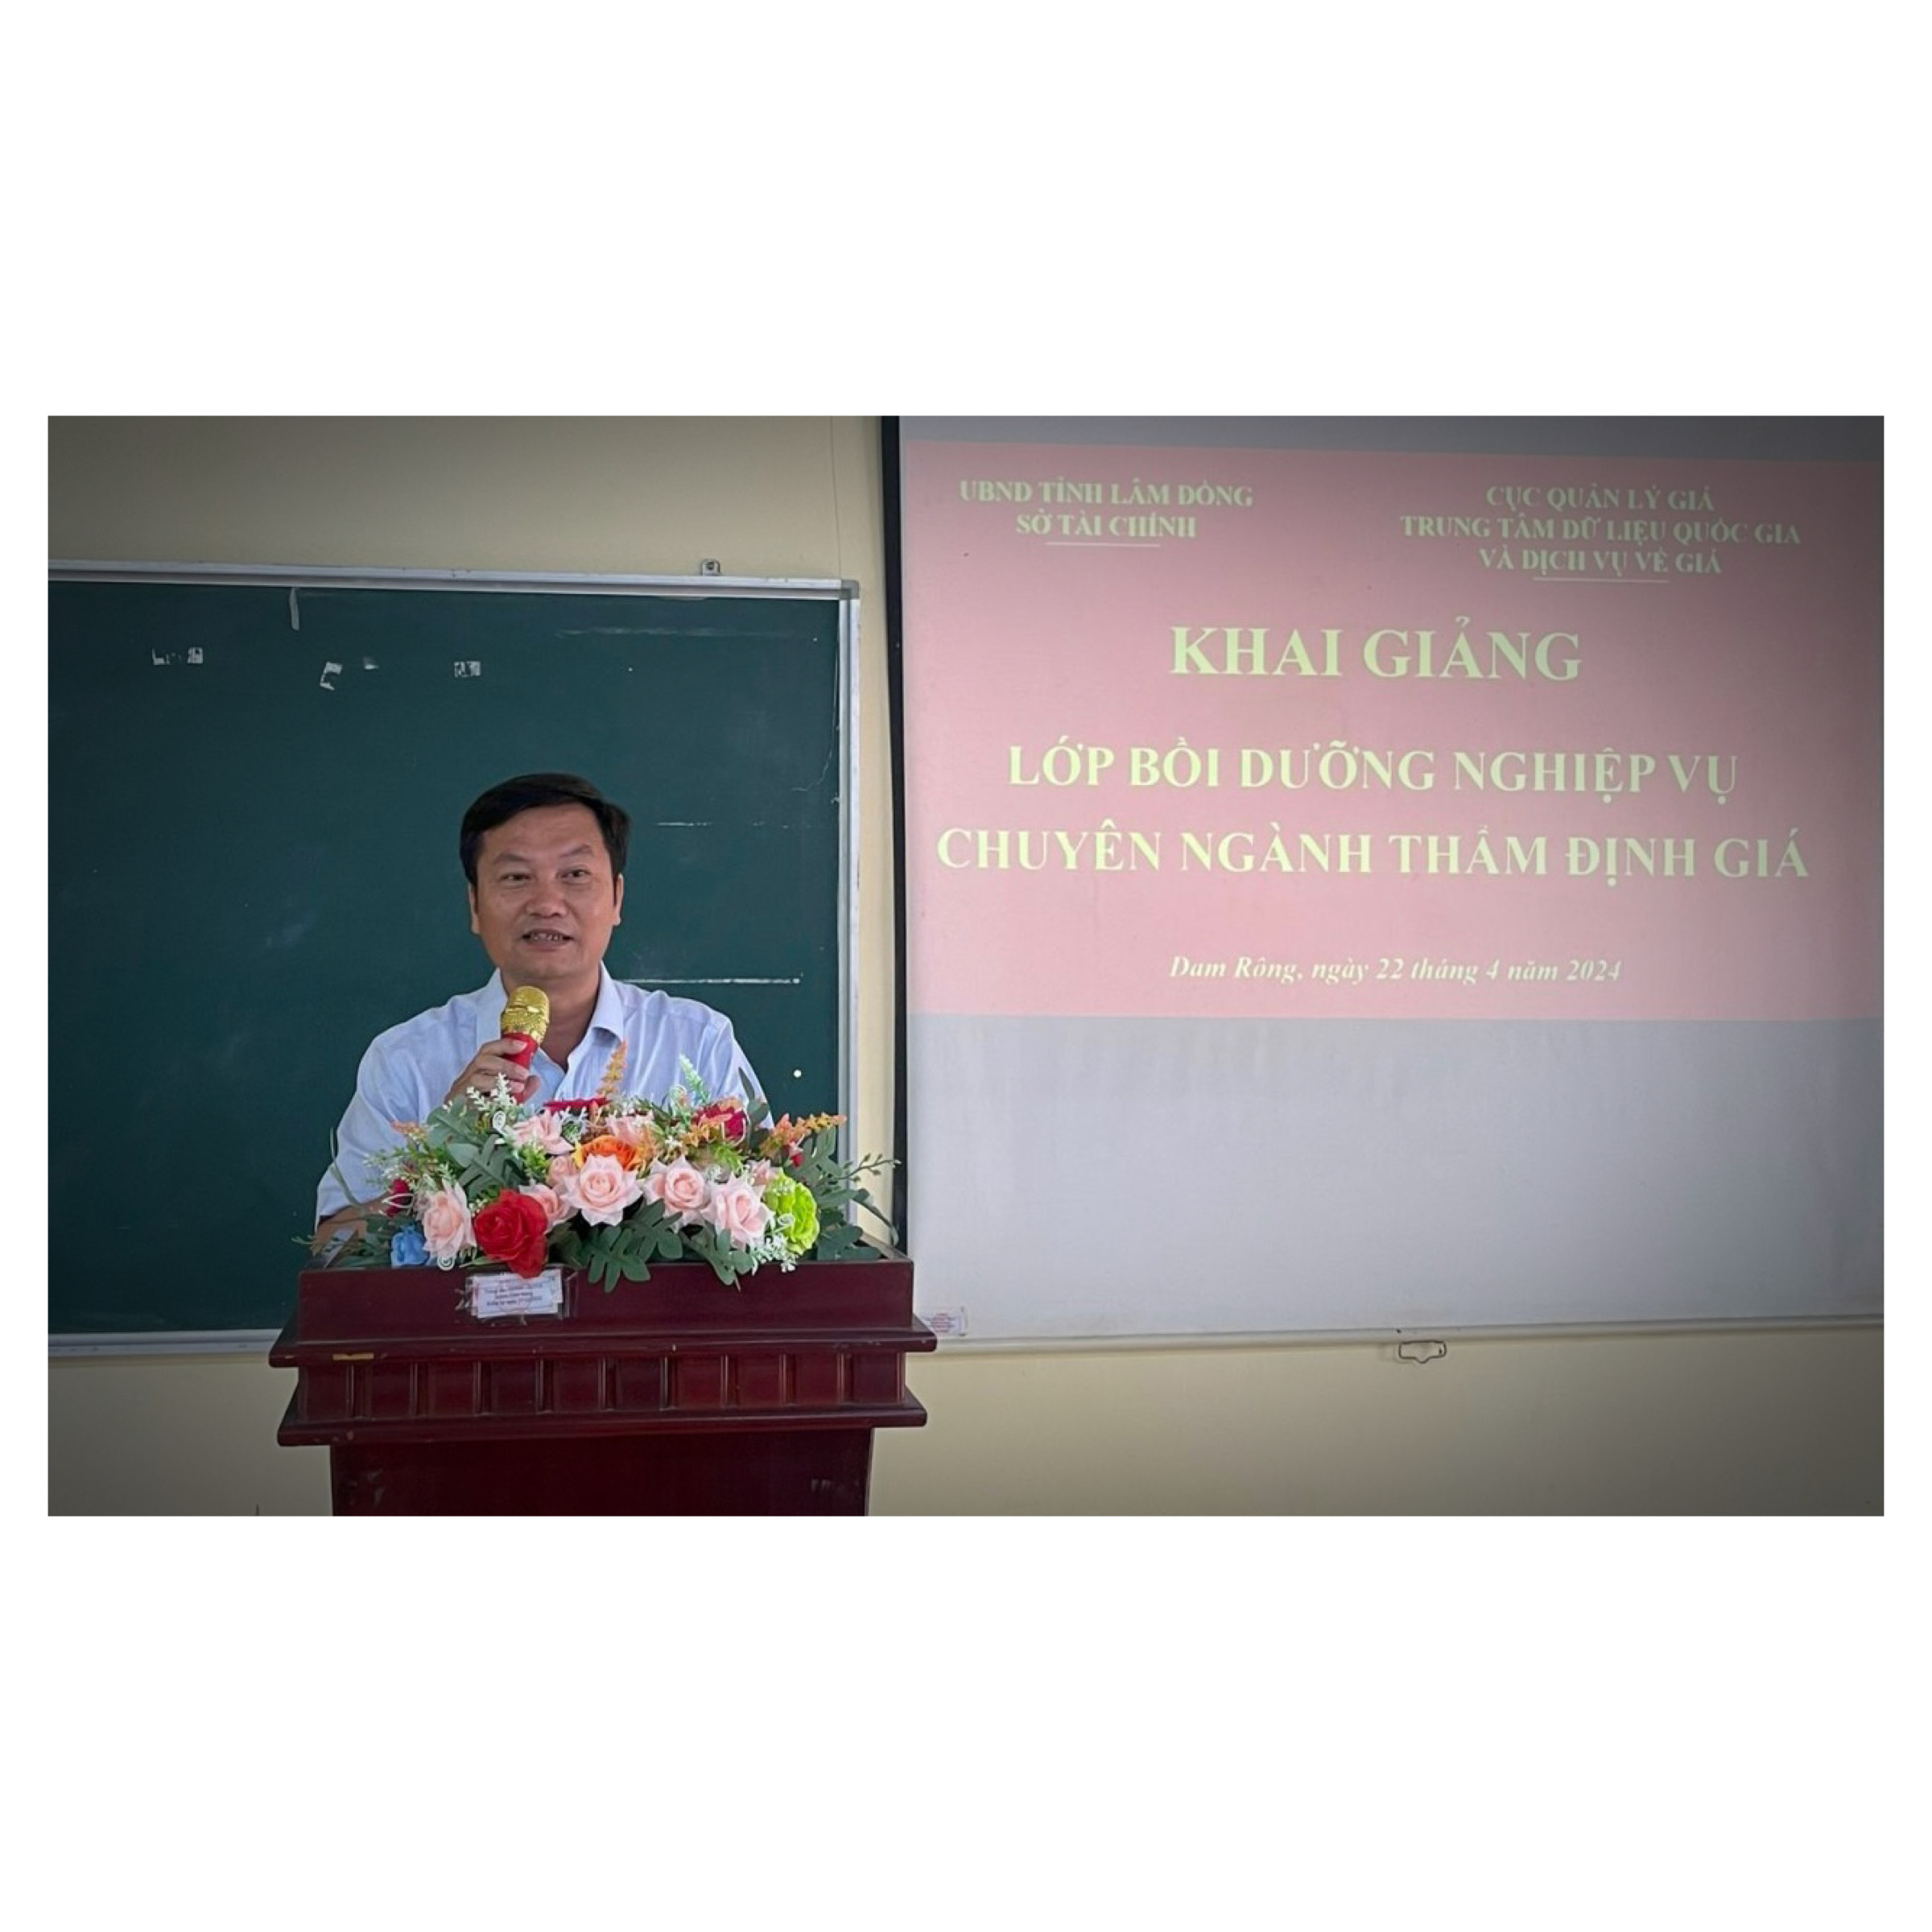 Khai giảng lớp Bồi dưỡng nghiệp vụ chuyên ngành thẩm định giá tại huyện Đam Rông - tỉnh Lâm Đồng